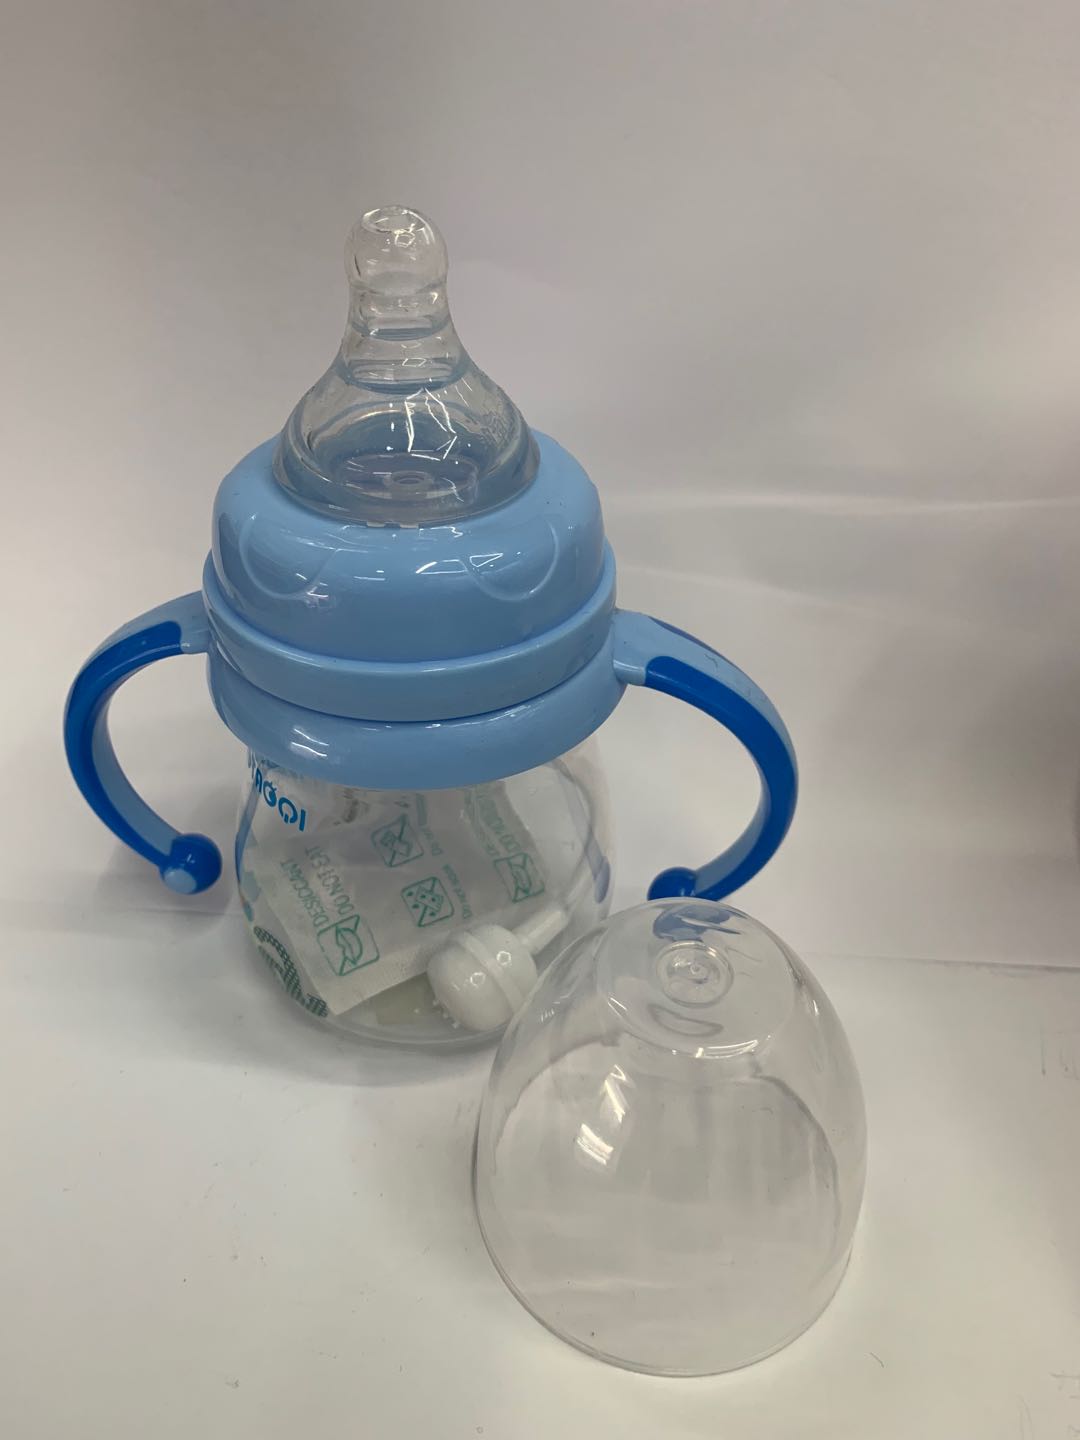 专业婴儿用品制造瓶口宽口防胀气新生儿硅胶奶瓶03细节图